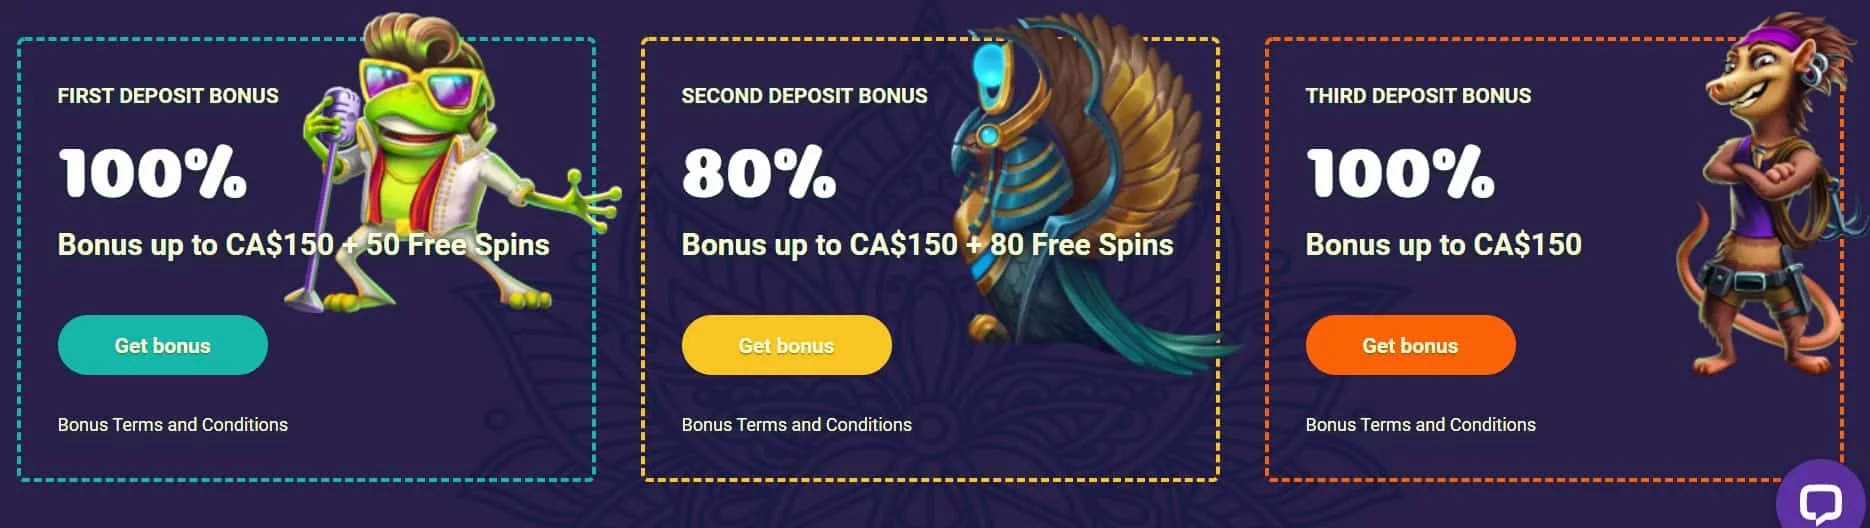 Samosa Casino welcome bonuses-min